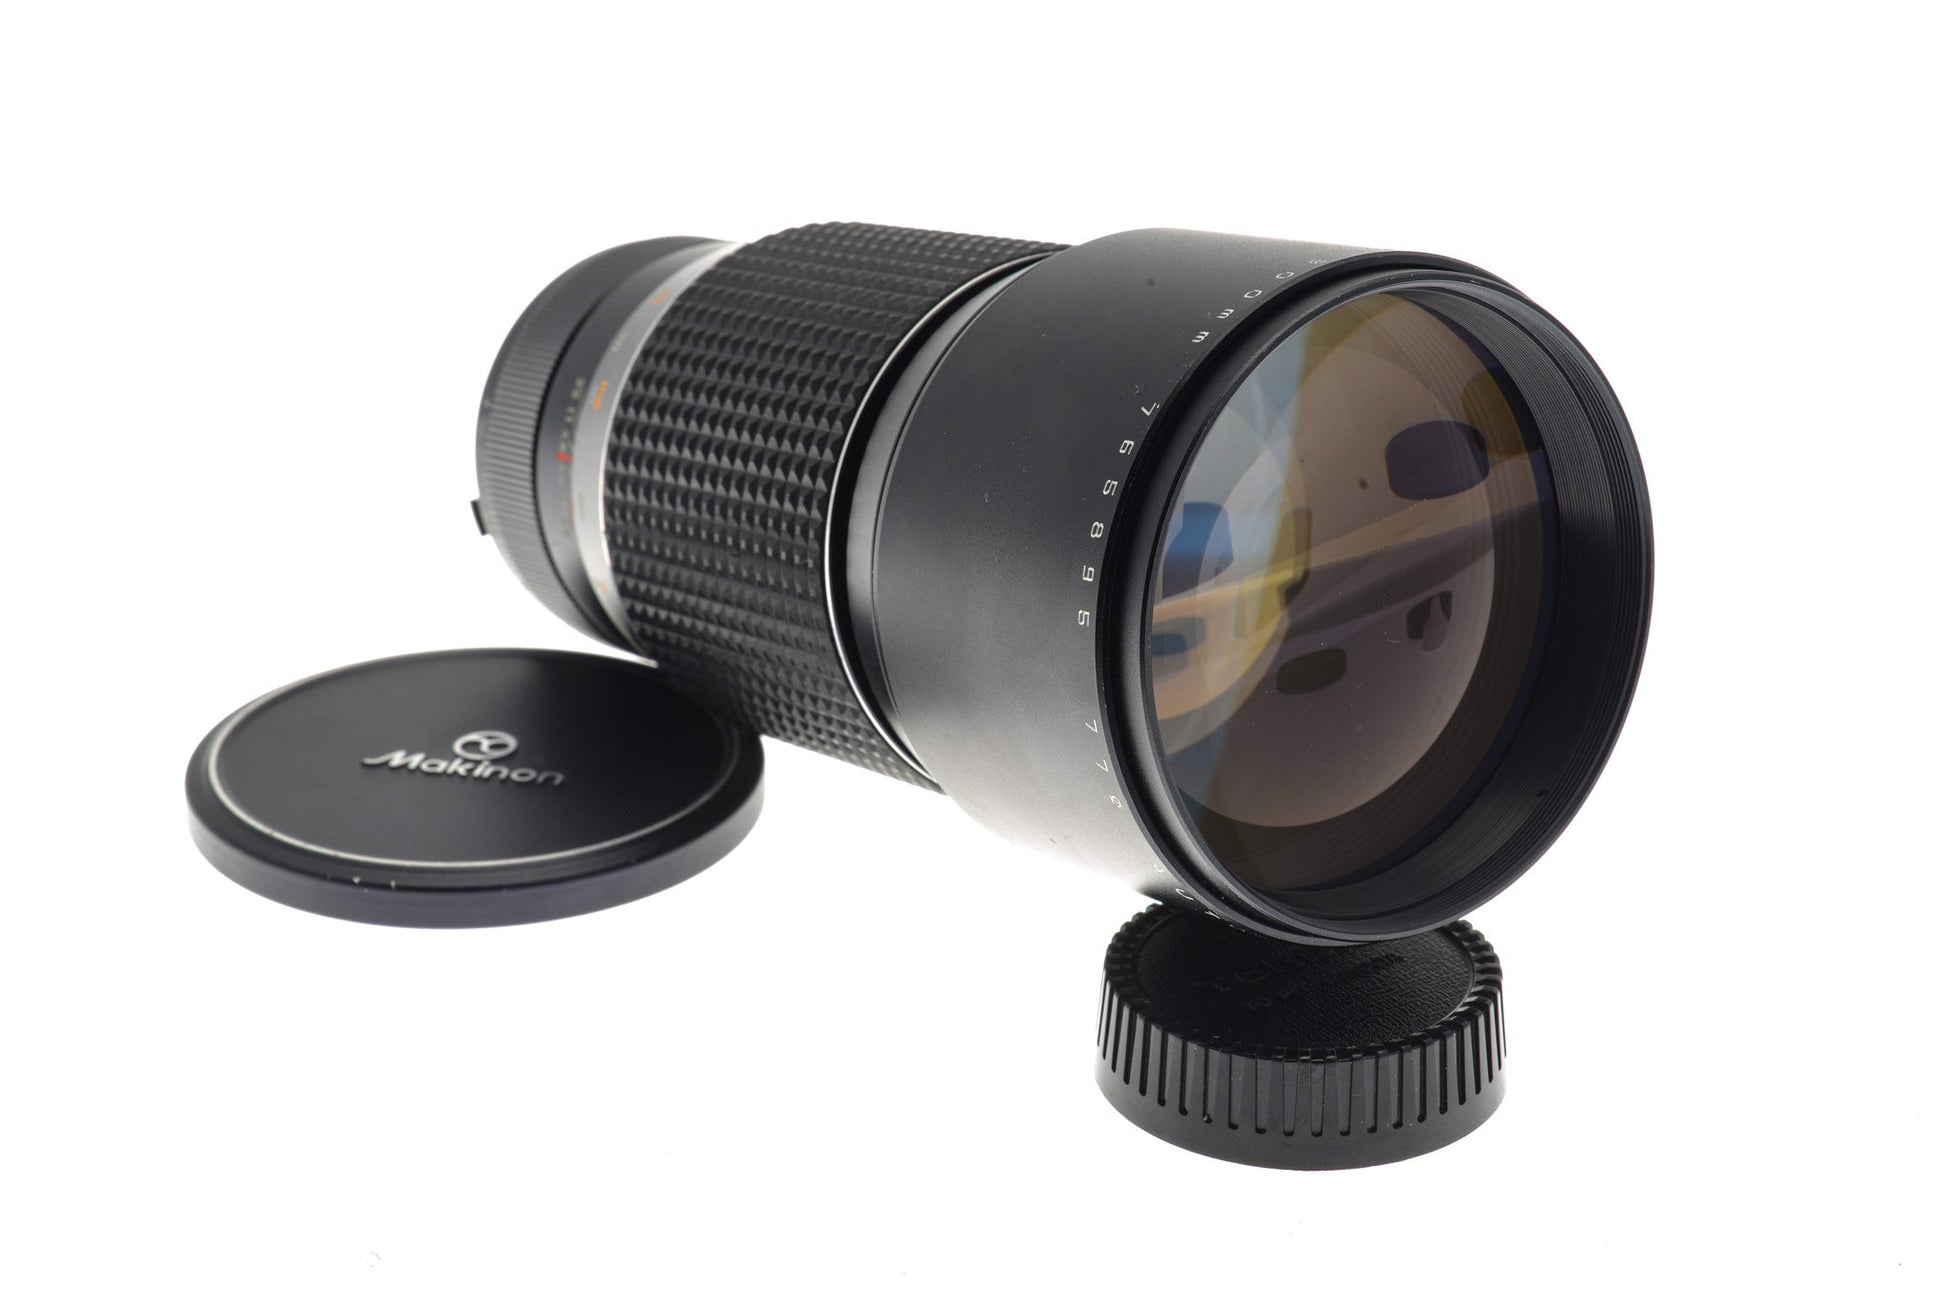 Makinon 300mm f4 Auto MC - Lens